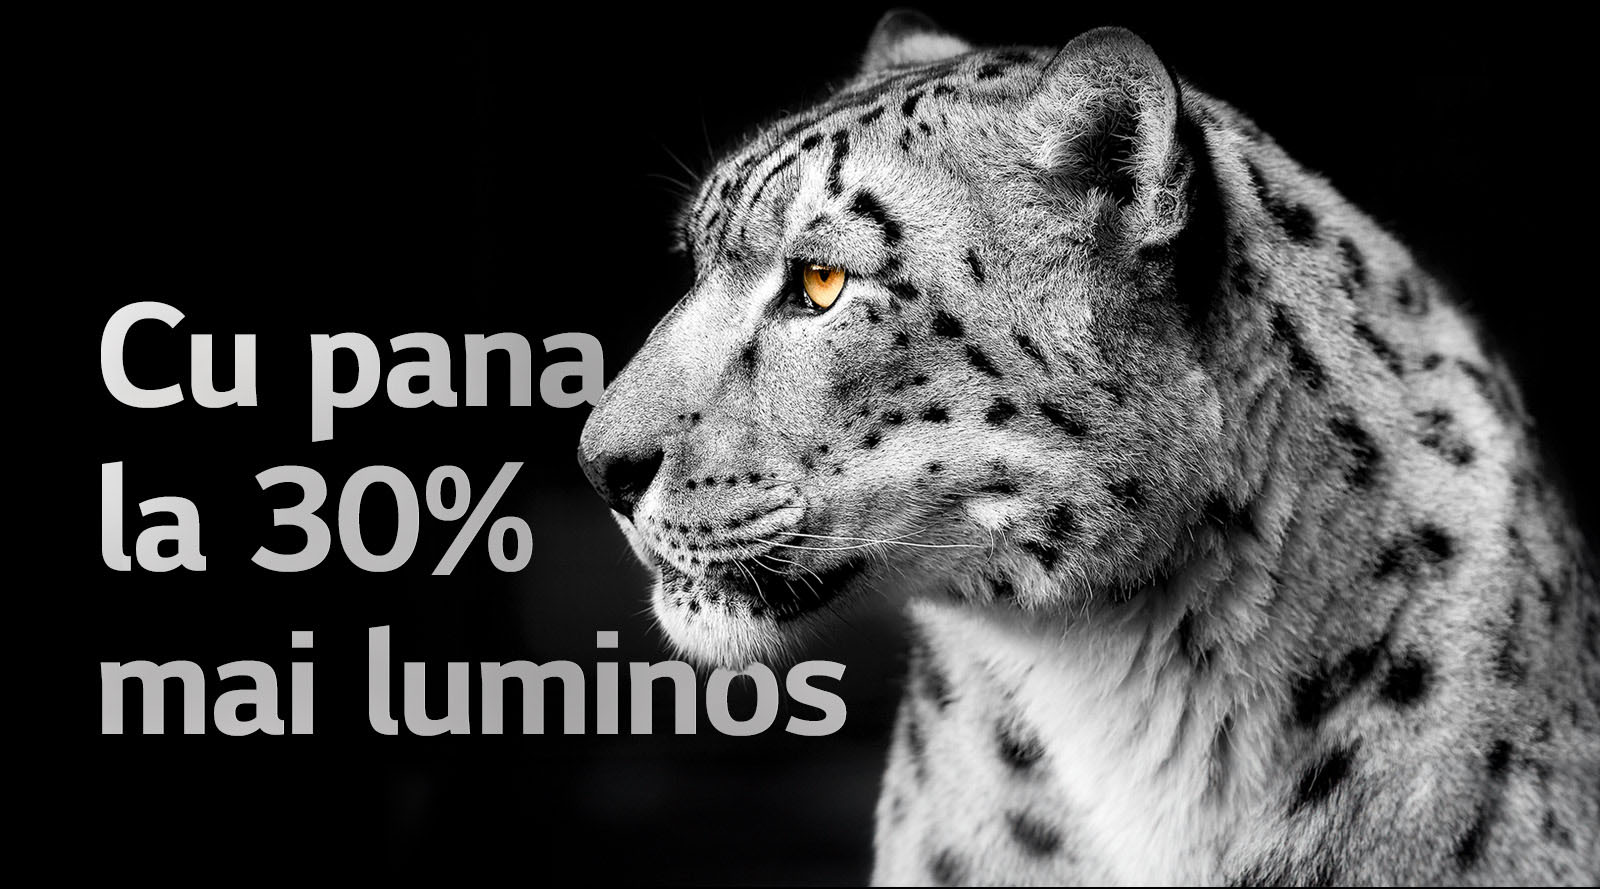 Un leopard alb care își arată fața din lateral, în partea stângă a imaginii. Cuvintele „Până la 30% mai luminos” apar în stânga.